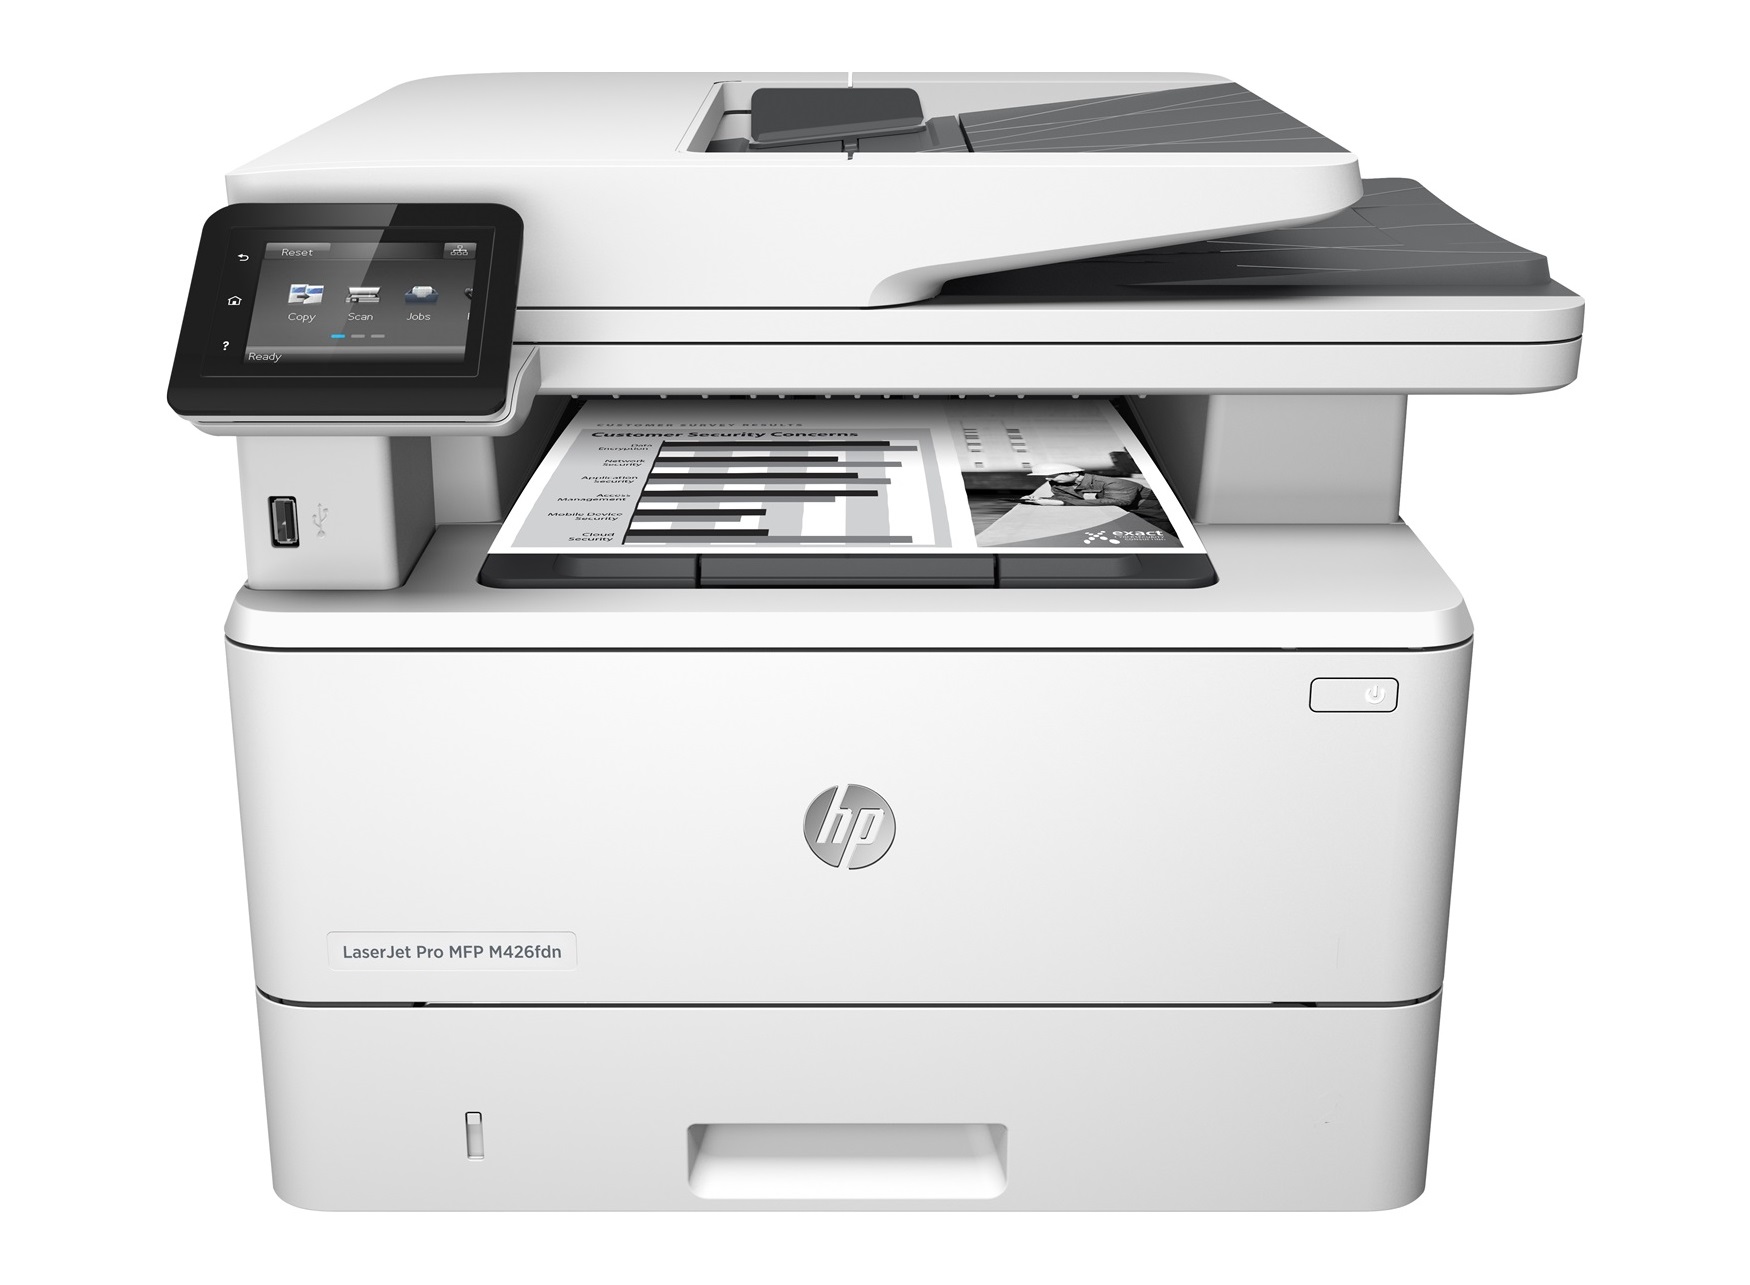 惠普于1984年推出了他们自己的第一台激光打印机以及第一台热敏式喷墨打印机